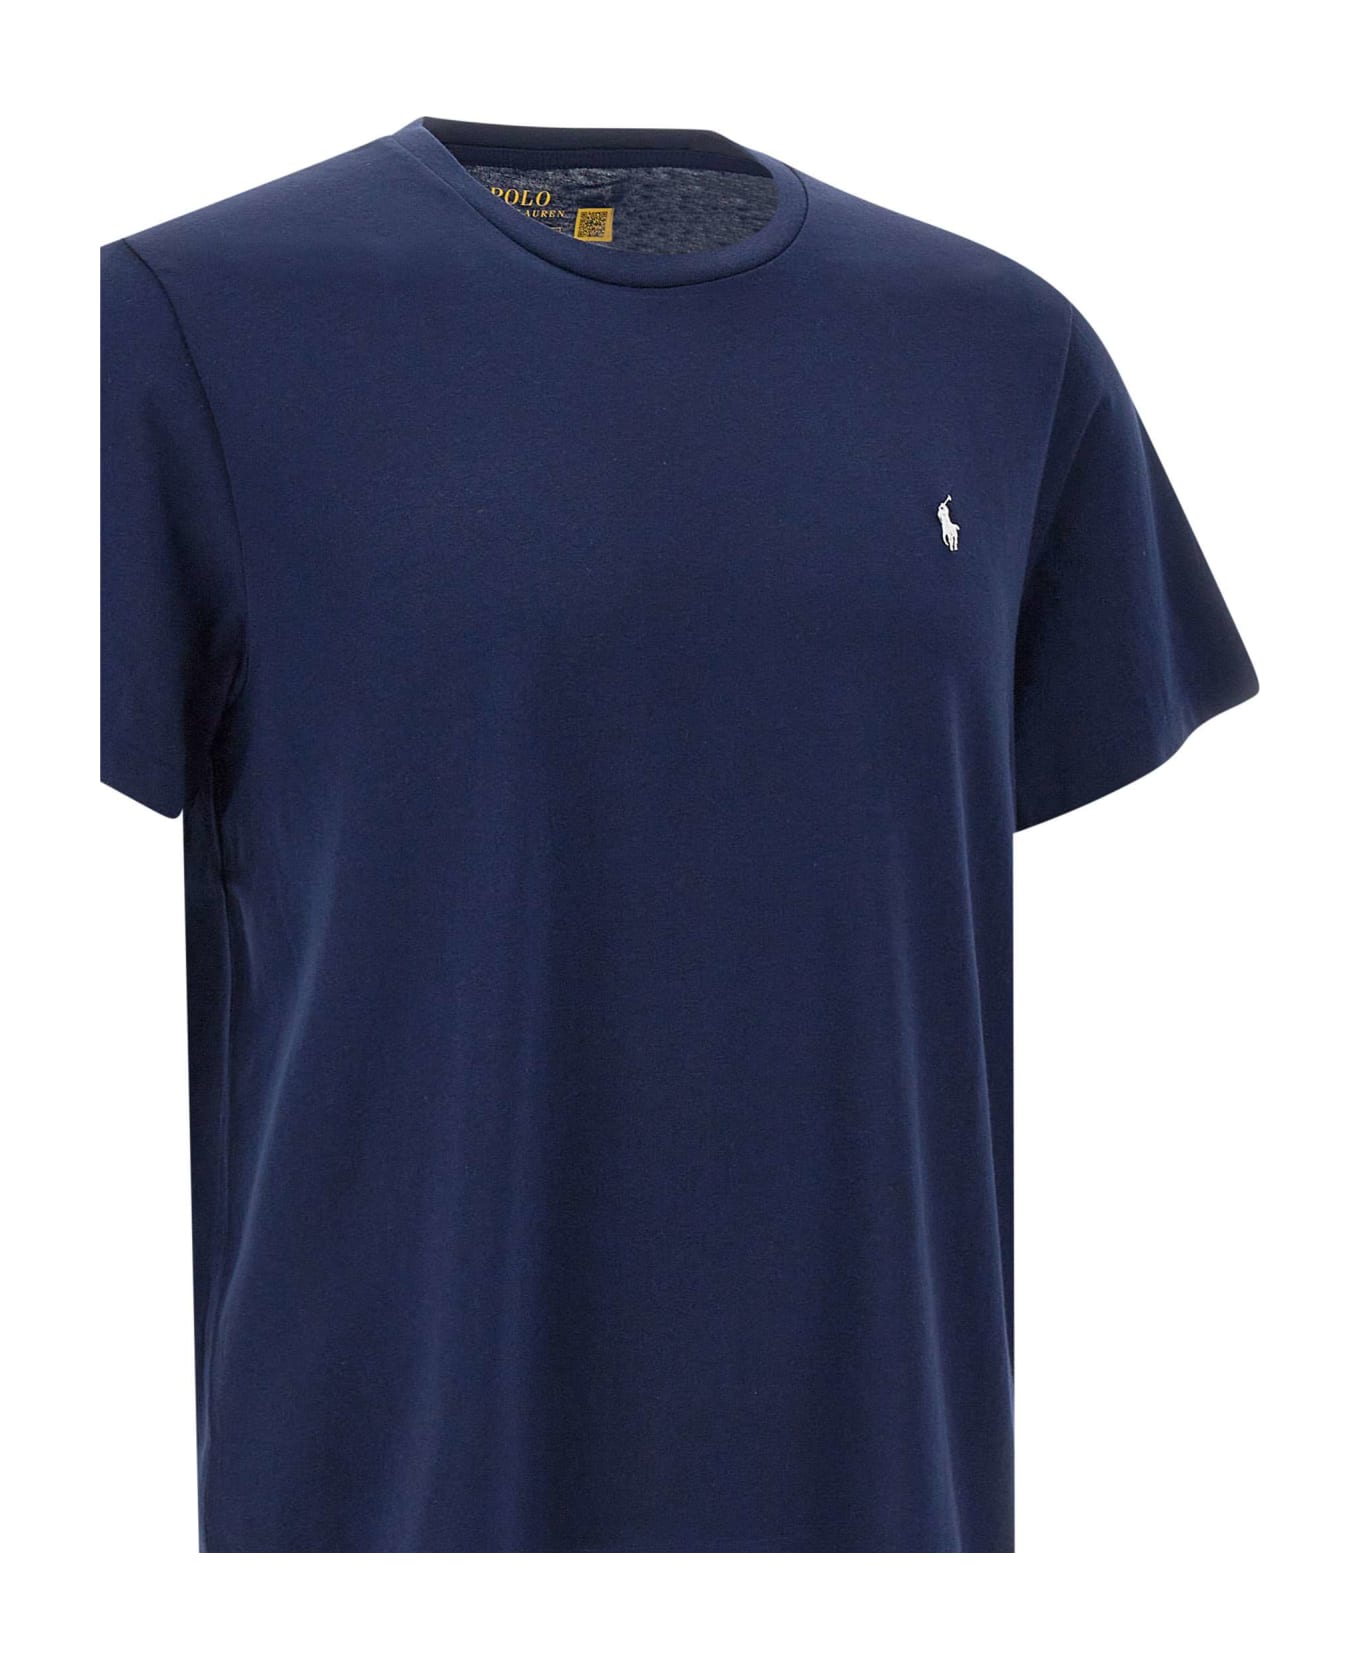 Polo Ralph Lauren "core Replen" Cotton T-shirt - BLUE